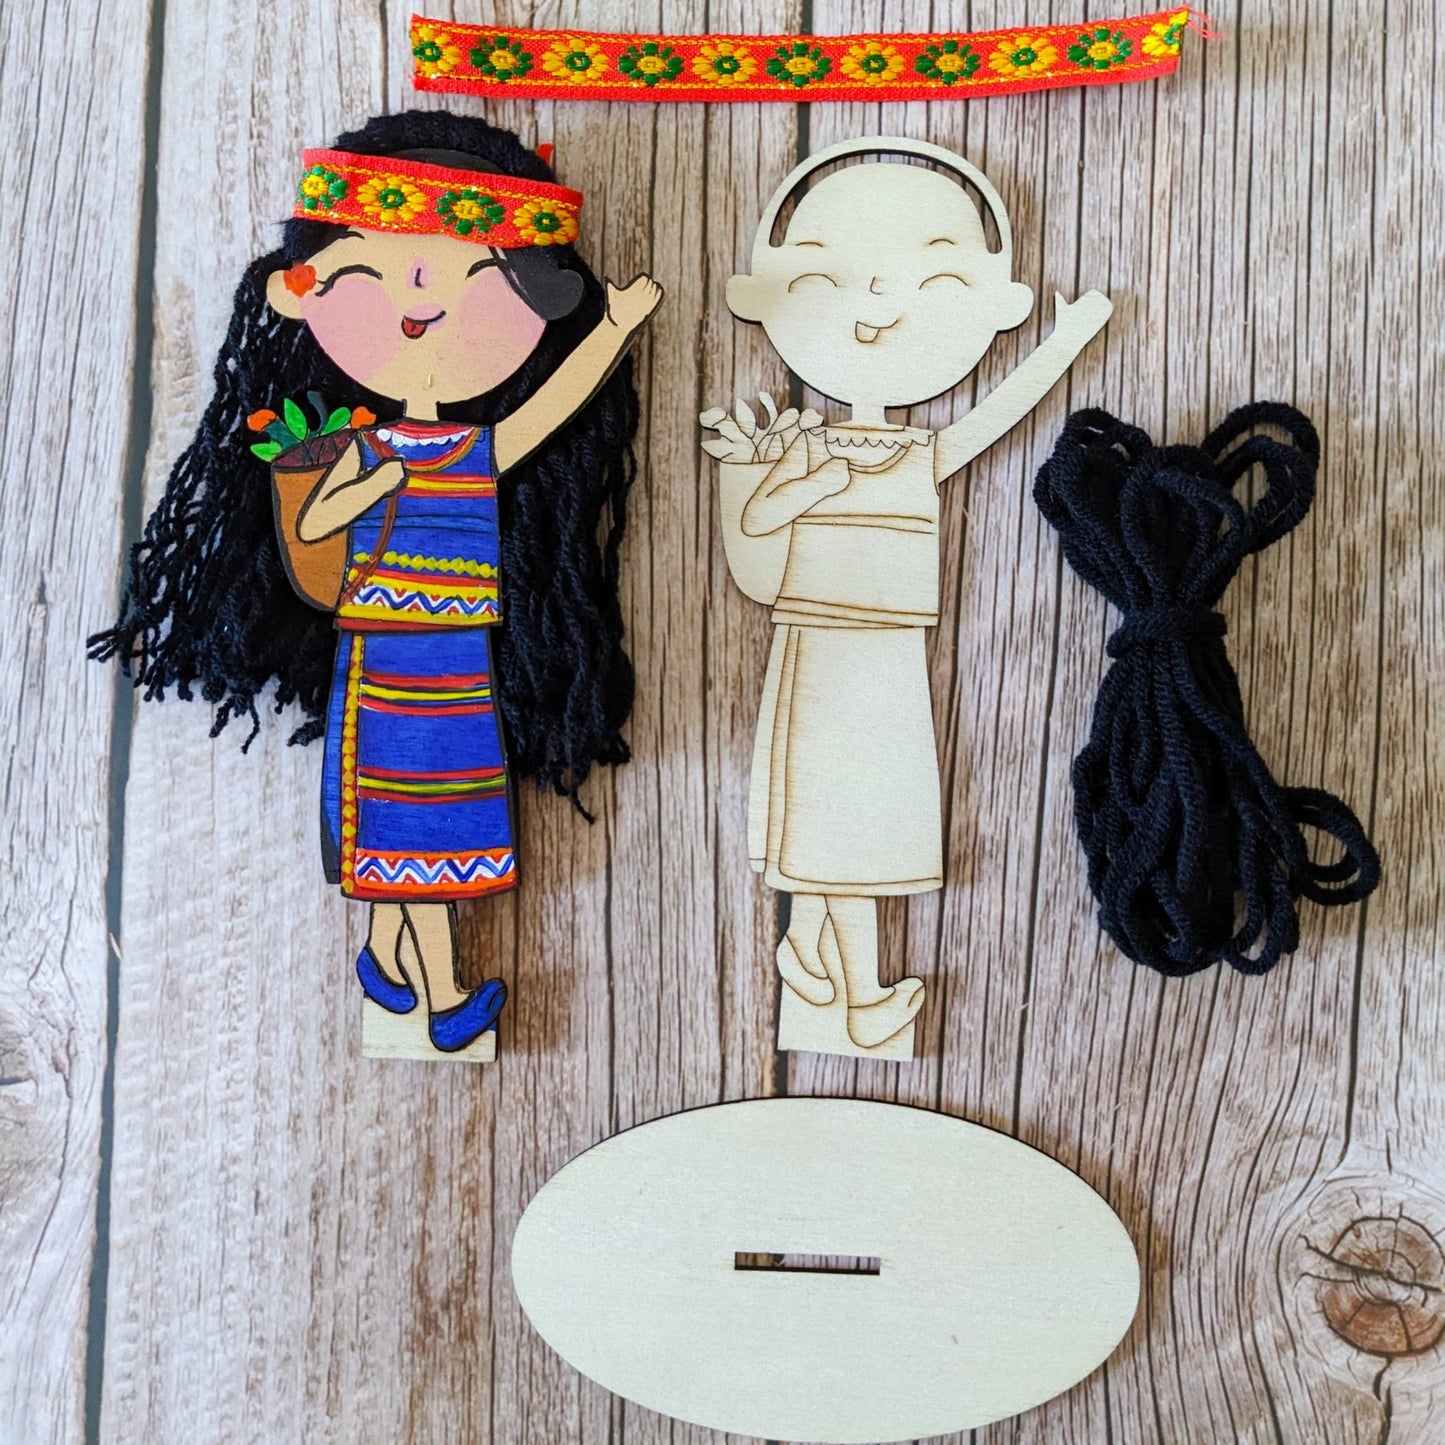 BỘ TRANG TRÍ BÚP BÊ TỪ GỖ | Ethnic Wooden Dolls Decoration Kit